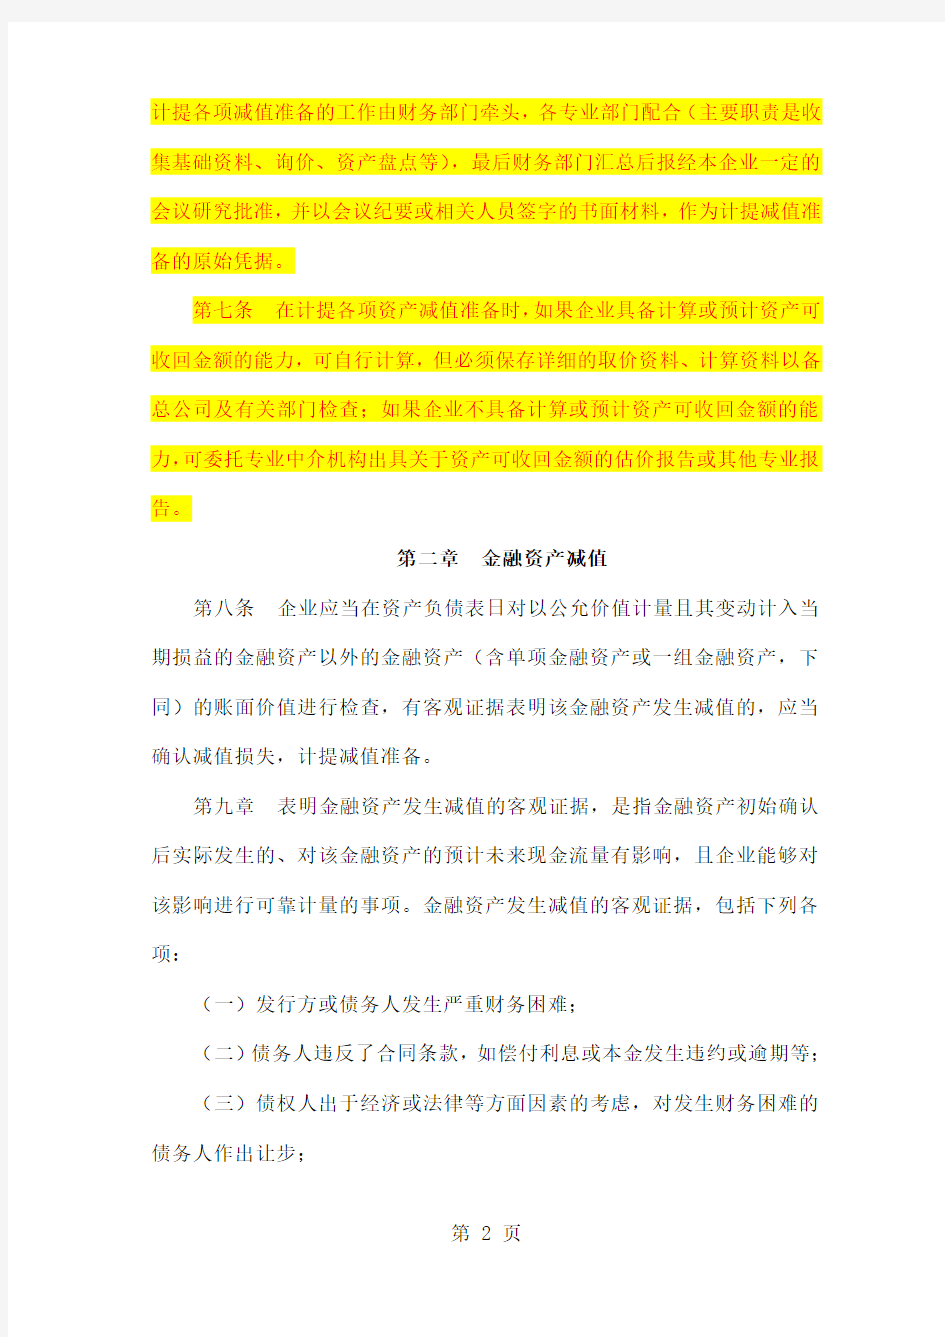 中国铁道建筑总公司关于资产减值准备的暂行规定共19页